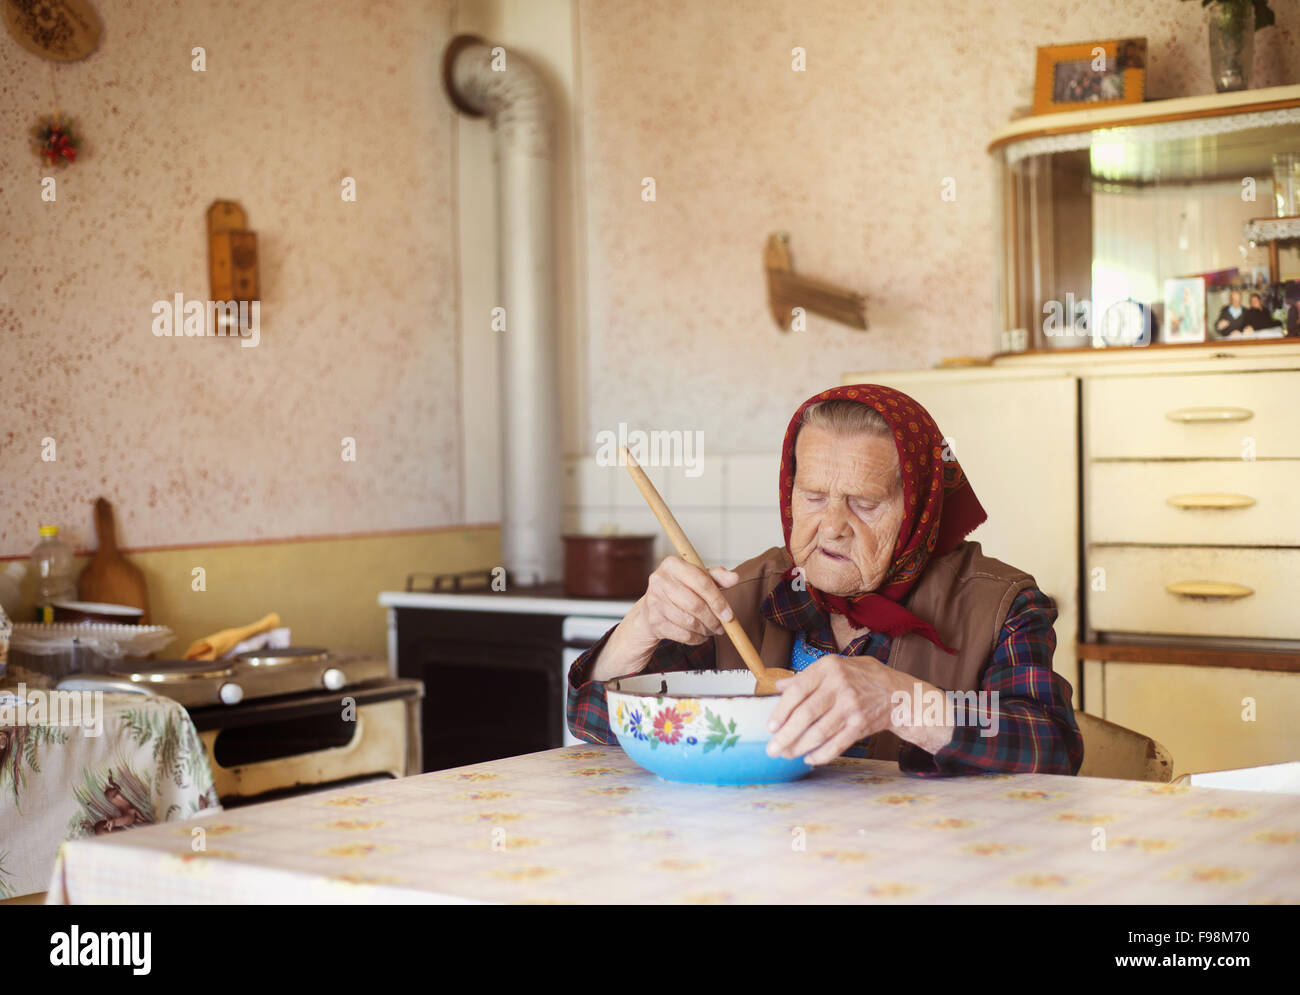 Molto vecchia donna nella preparazione degli alimenti nel suo vecchio stile country kitchen Foto Stock